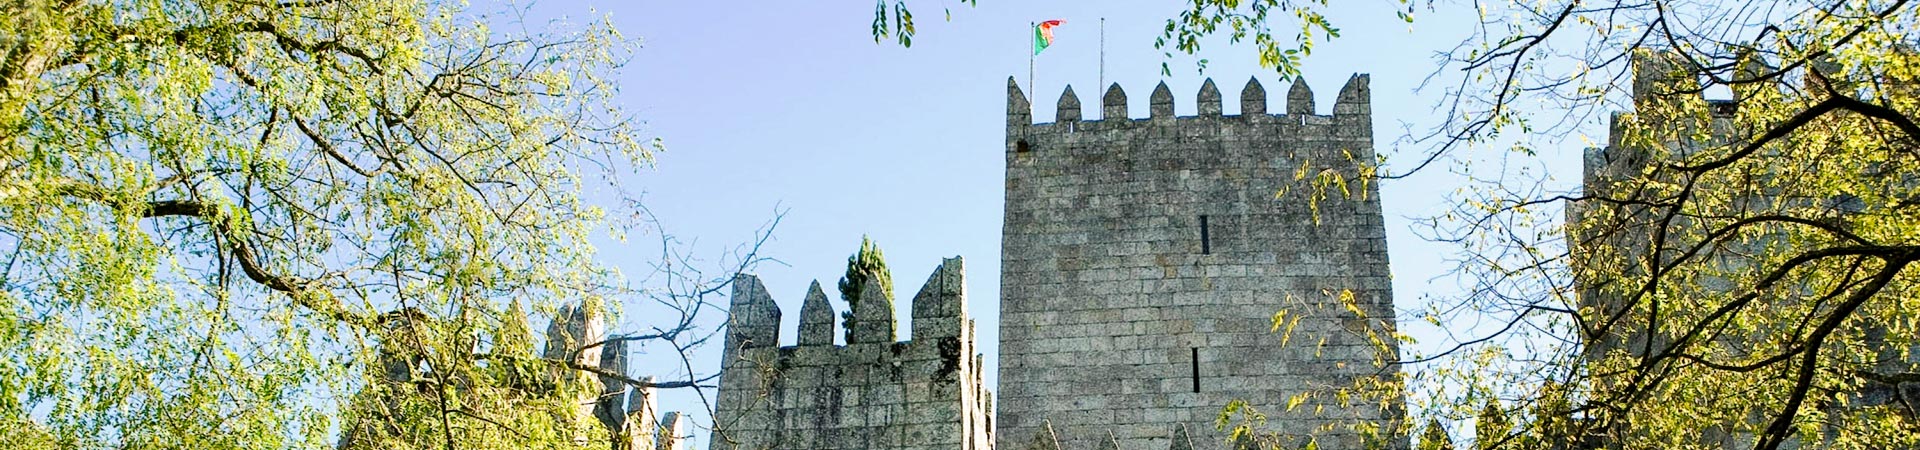 The city of Guimarães